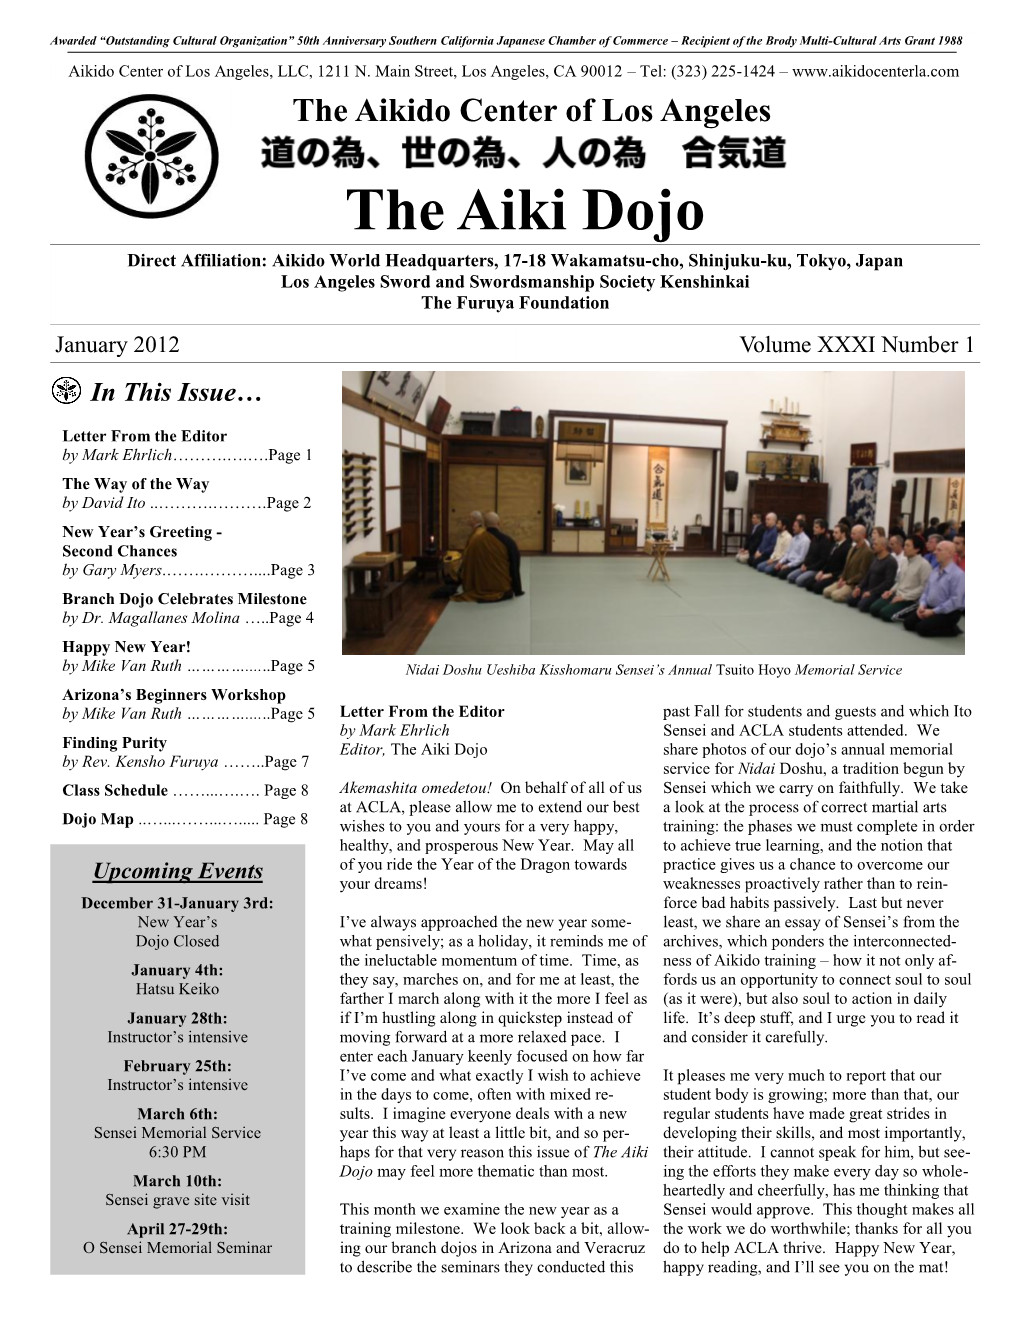 The Aiki Dojo